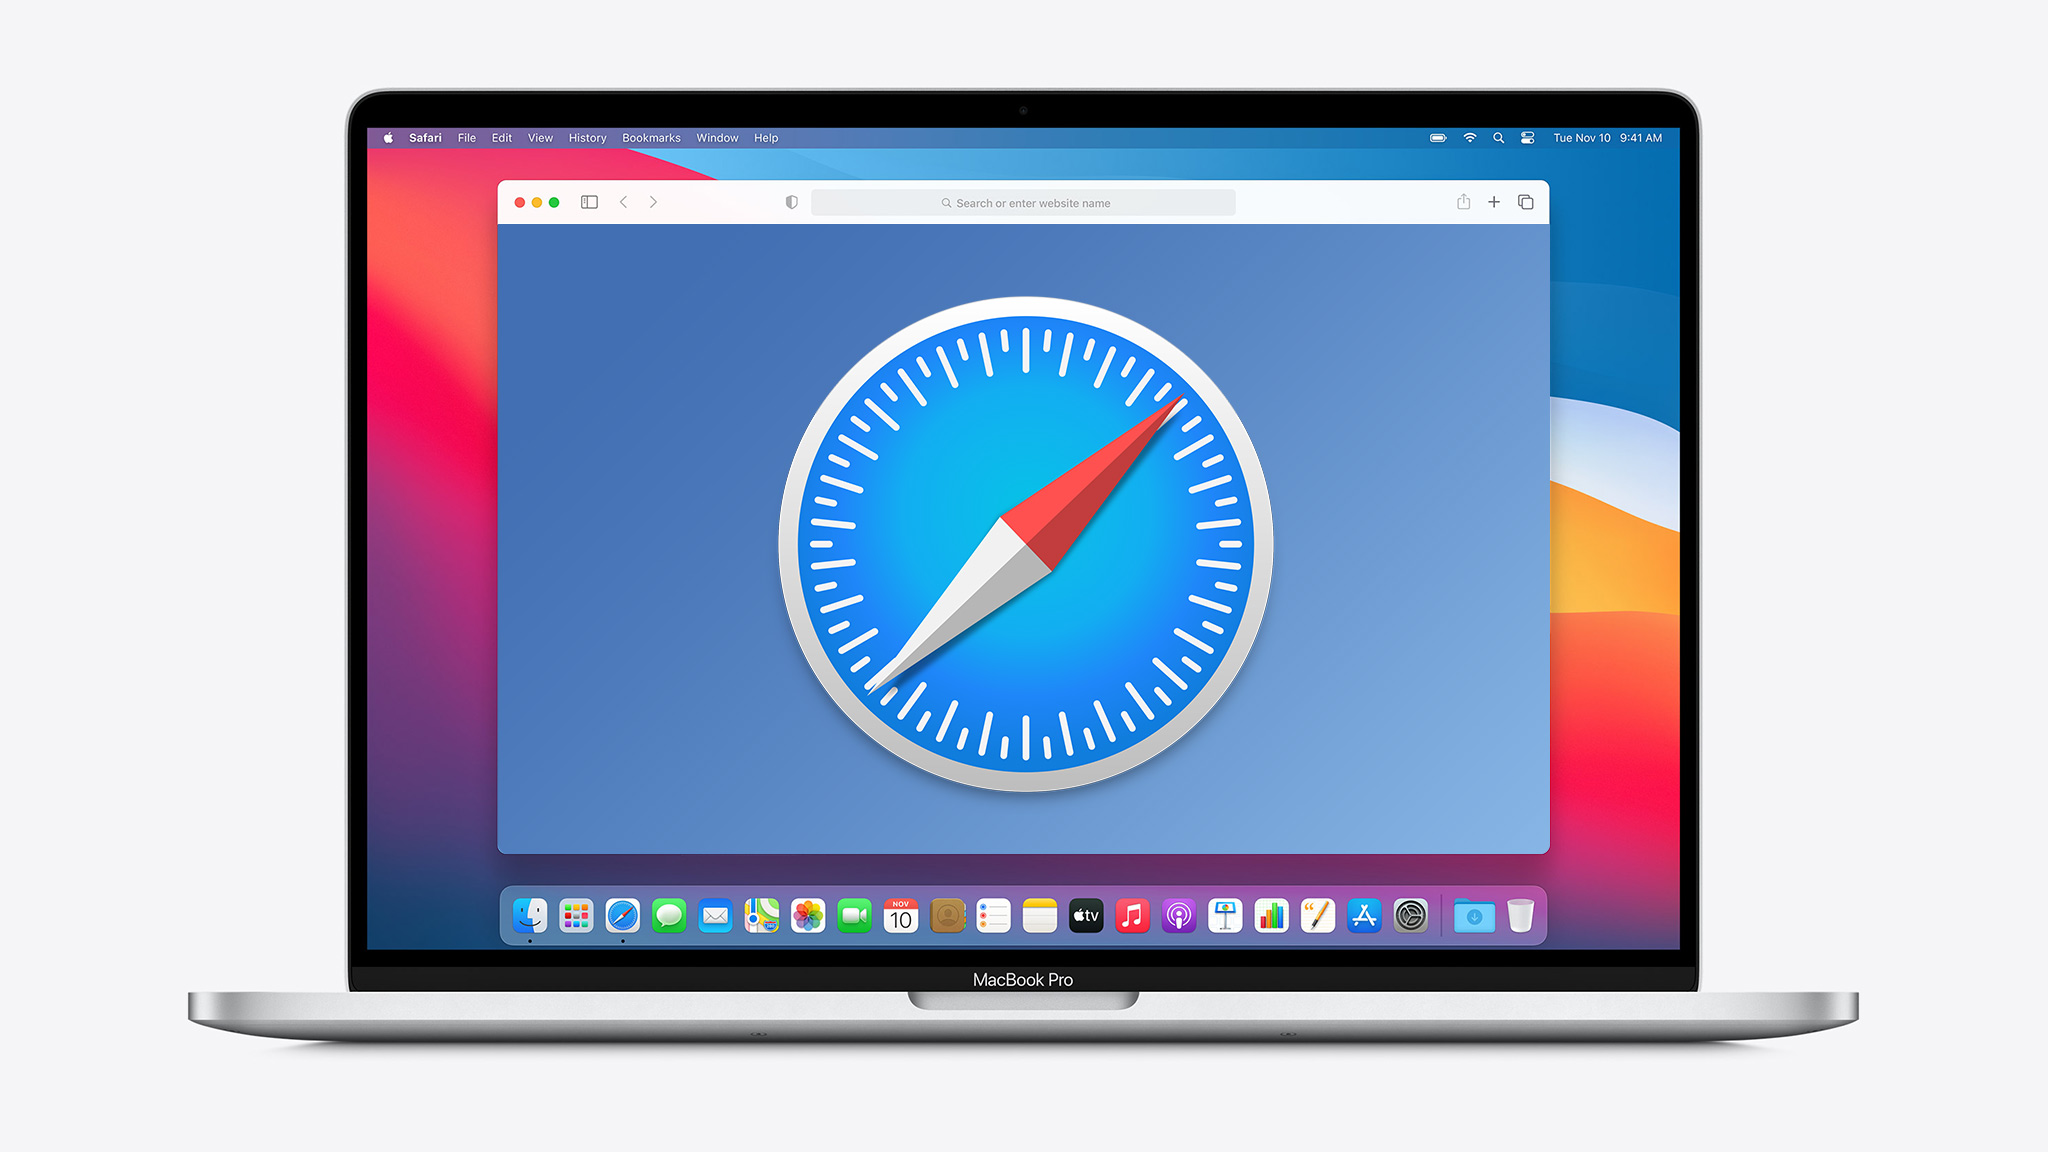 Überprüfen Sie, ob Safari auf dem neuesten Stand ist.
Führen Sie Software-Updates für Ihren Mac durch.